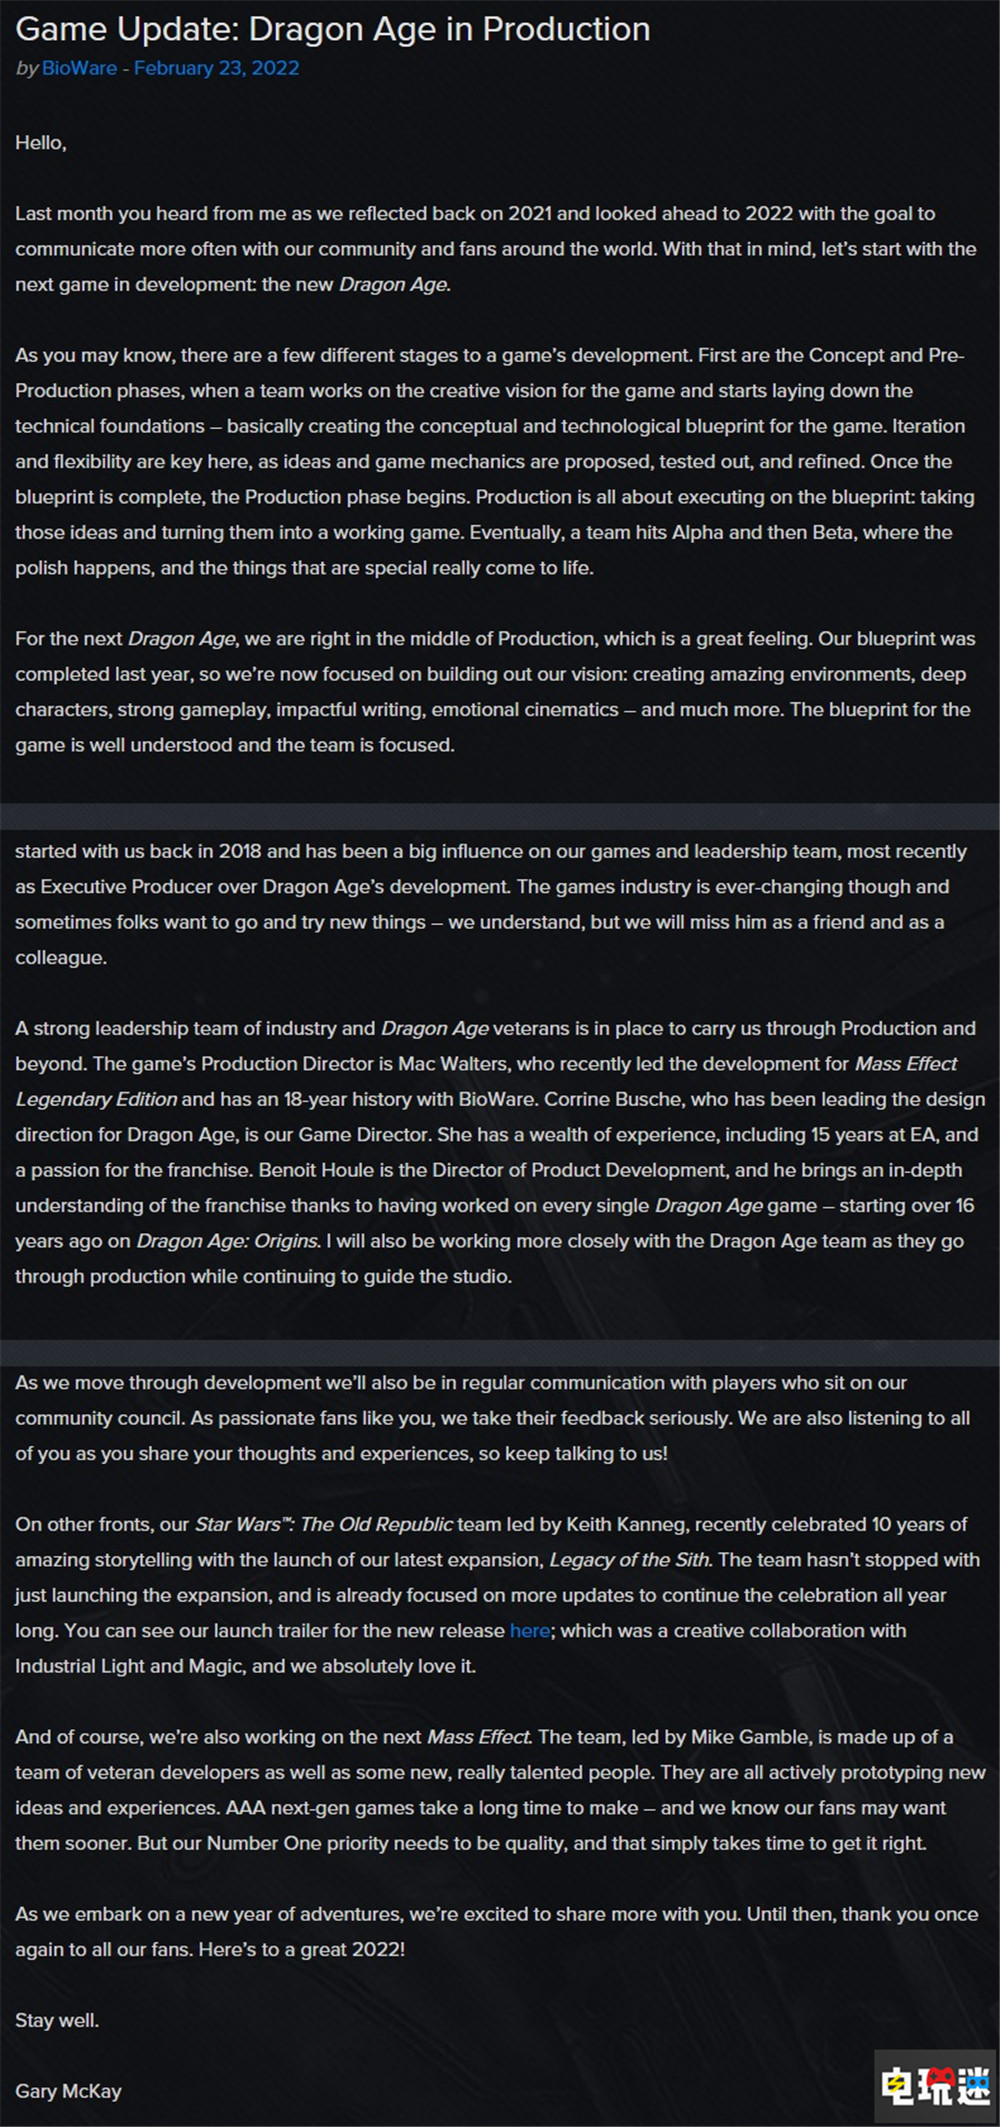 《龙腾世纪4》进入中期实质开发阶段 执行制作人离职 单机游戏 生软 BioWare EA 龙腾世纪4 电玩迷资讯  第2张